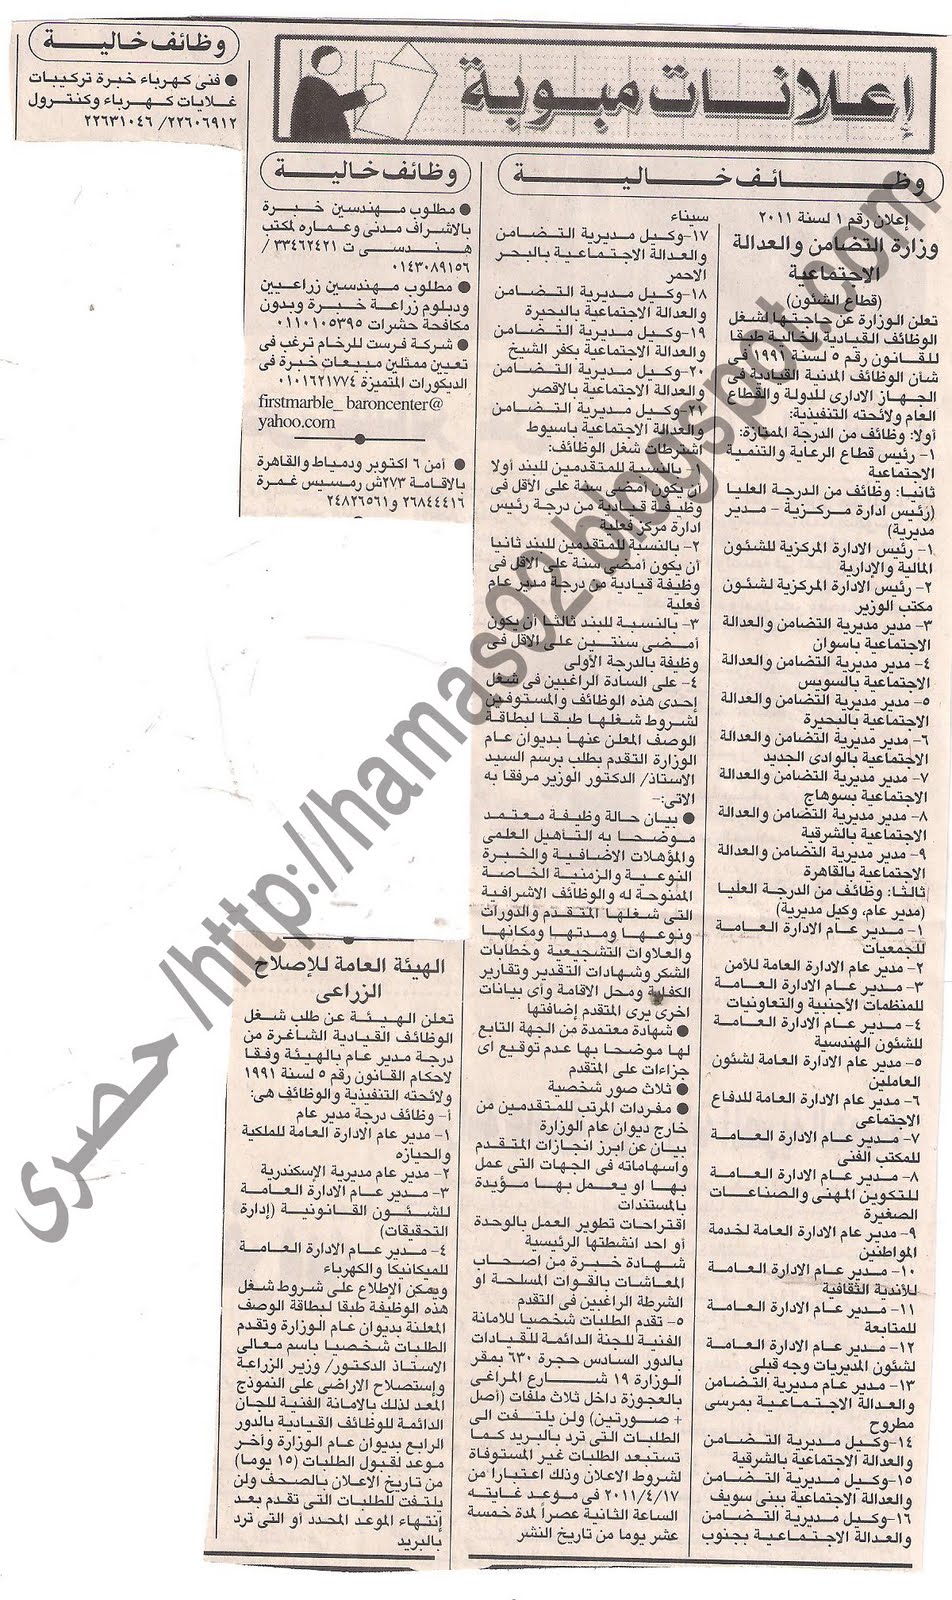 وظائف جريدة الاهرام  الاحد 17 ابريل 2011 - وظائف خالية من الصحف الاحد 17 ابريل 2011 Picture+001